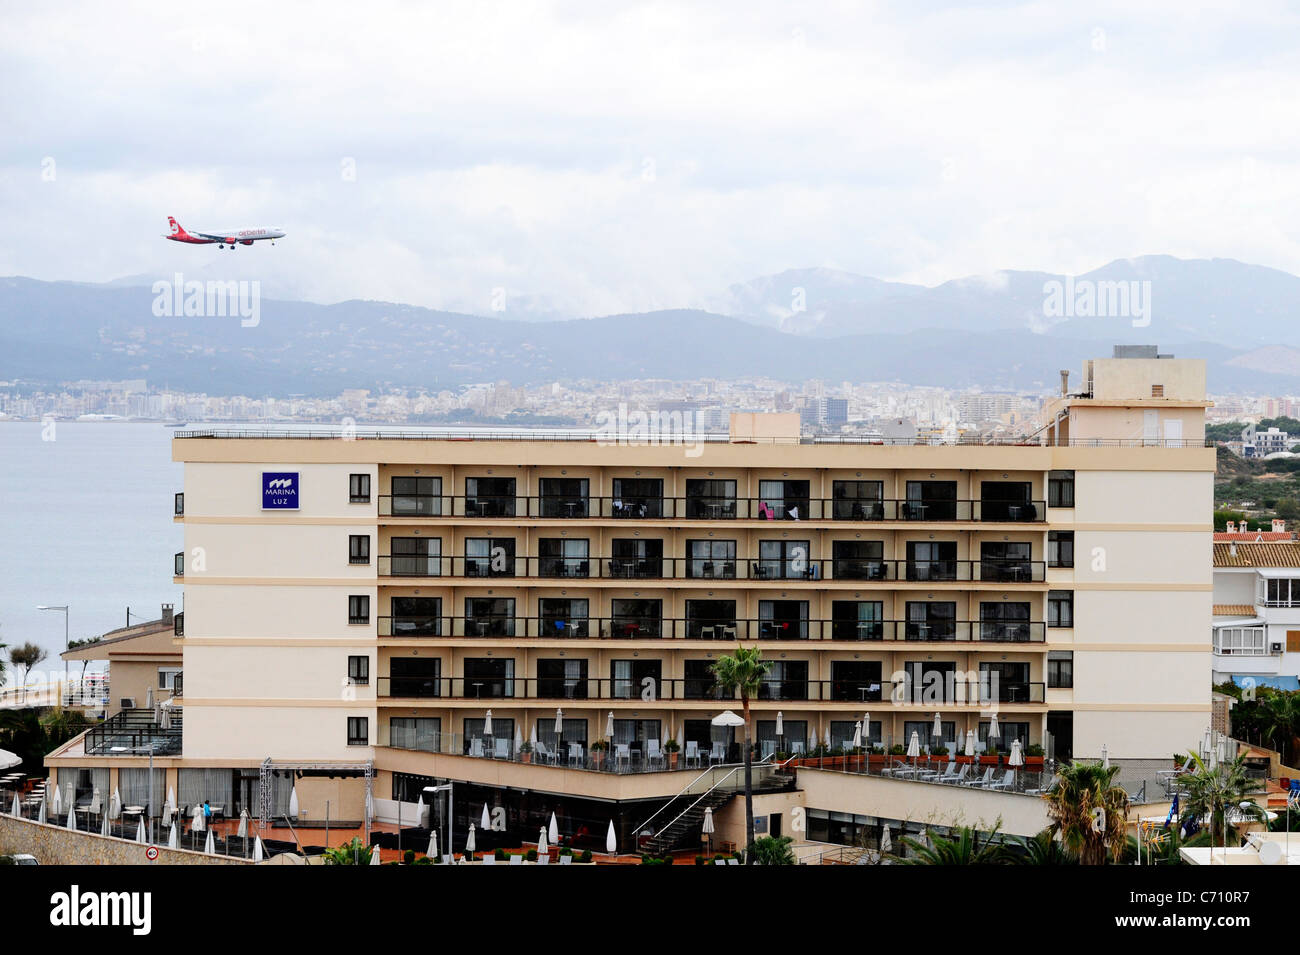 An Air Berlin aircraft coming in to land at Palma airport, Mallorca. Stock Photo